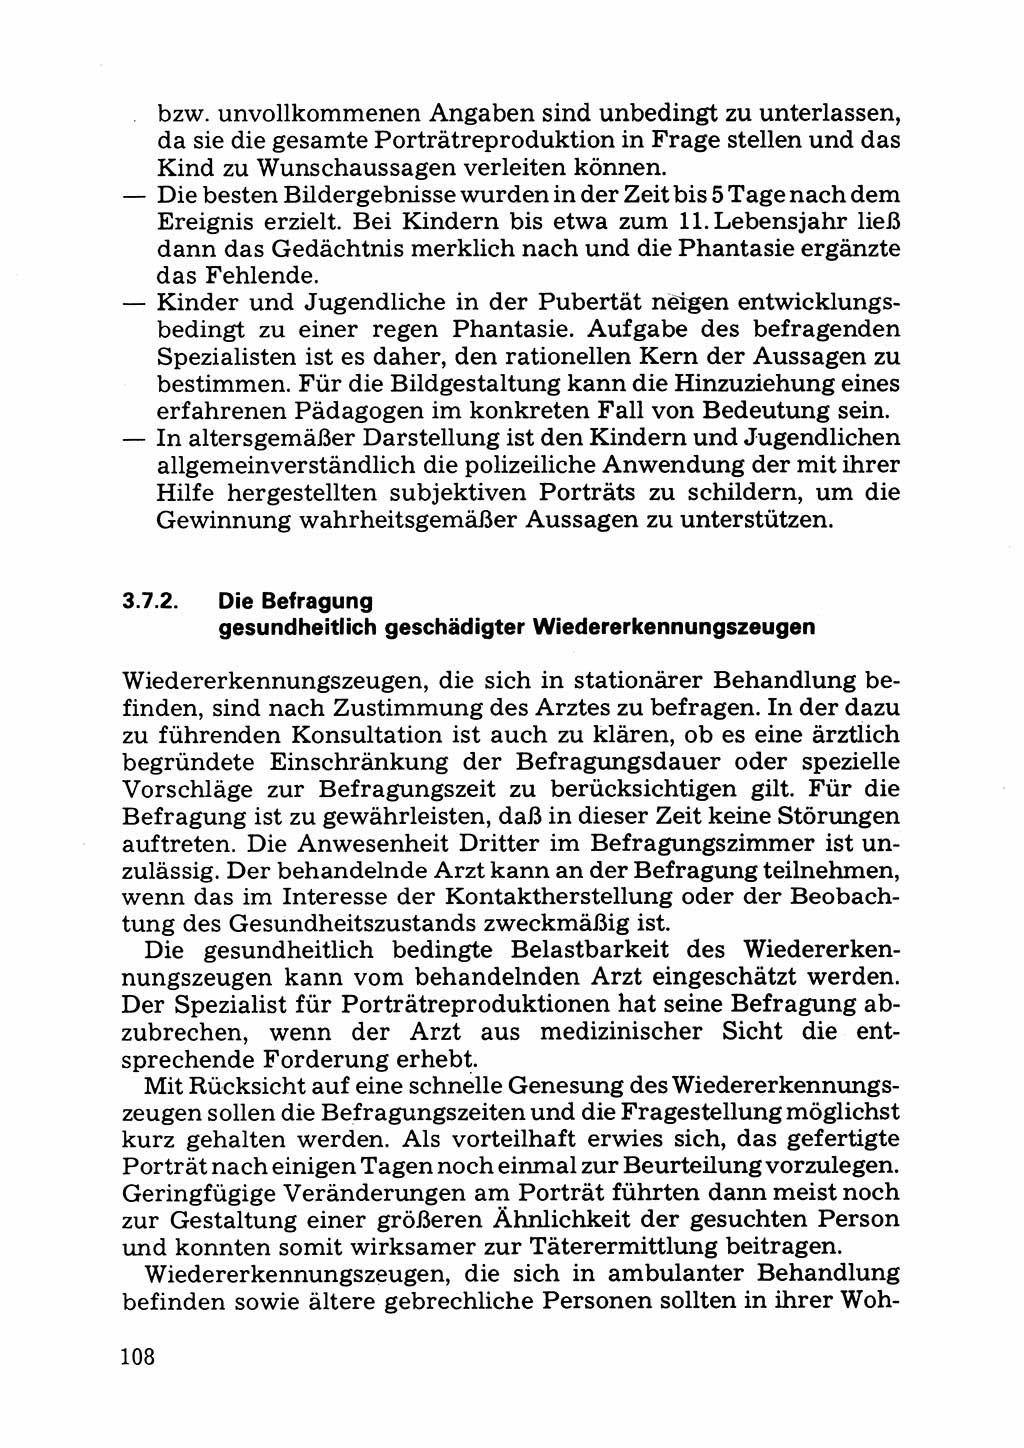 Das subjektive Porträt [Deutsche Demokratische Republik (DDR)] 1981, Seite 108 (Subj. Port. DDR 1981, S. 108)